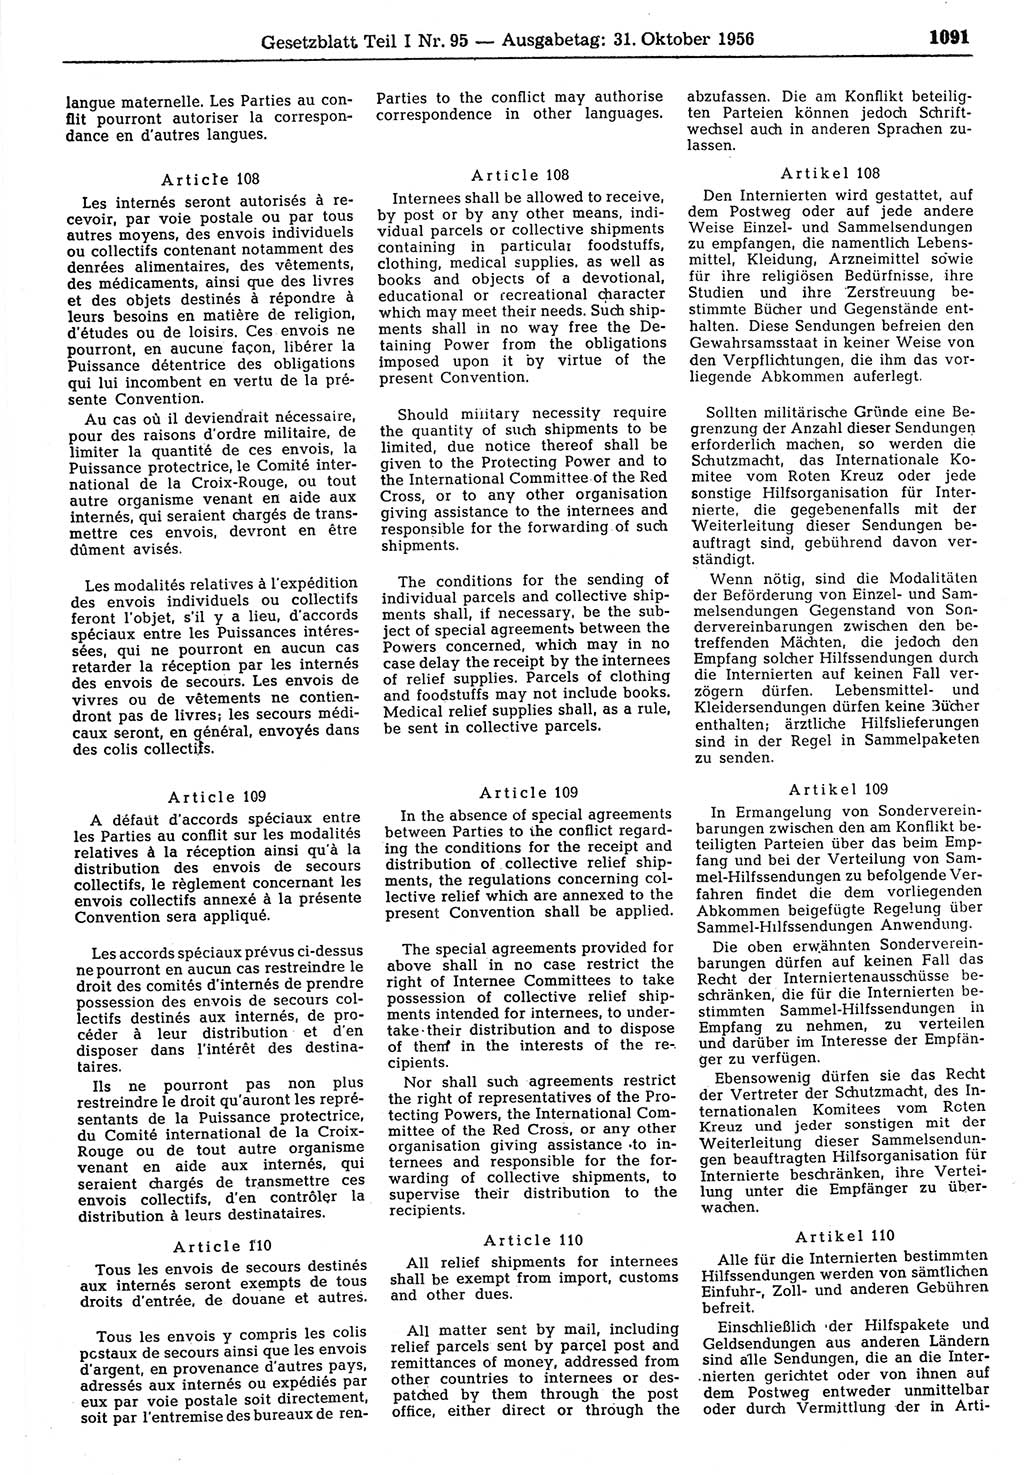 Gesetzblatt (GBl.) der Deutschen Demokratischen Republik (DDR) Teil Ⅰ 1956, Seite 1091 (GBl. DDR Ⅰ 1956, S. 1091)